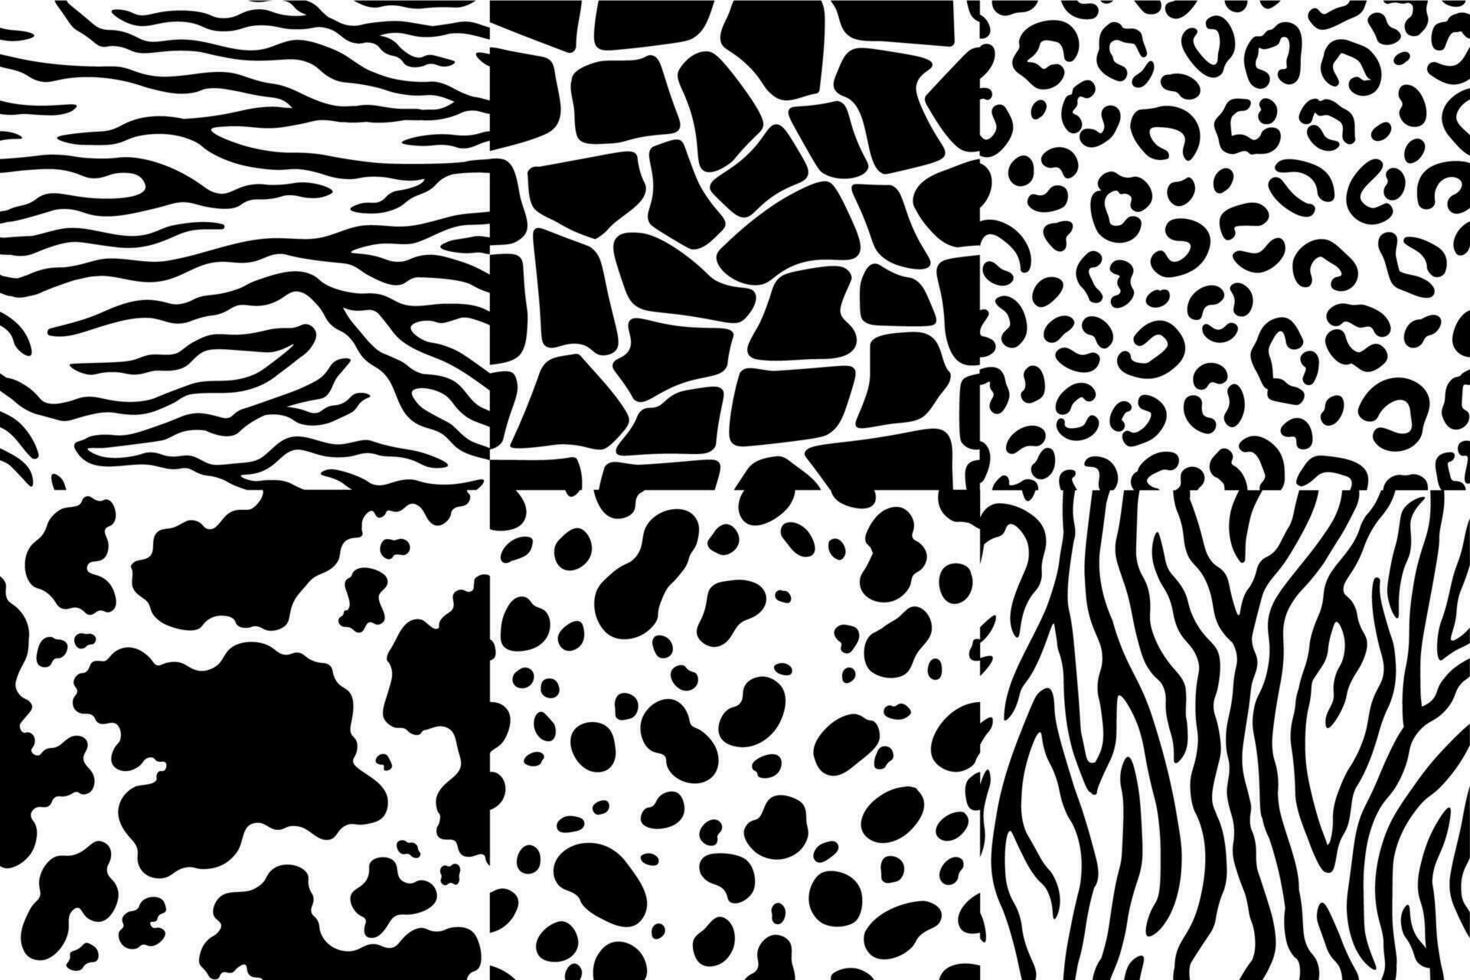 Tier Haut Muster. Tierwelt Zebra Textur, Tiger Haut Streifen und Leopard Flecken. Tiere Texturen nahtlos Muster Vektor einstellen